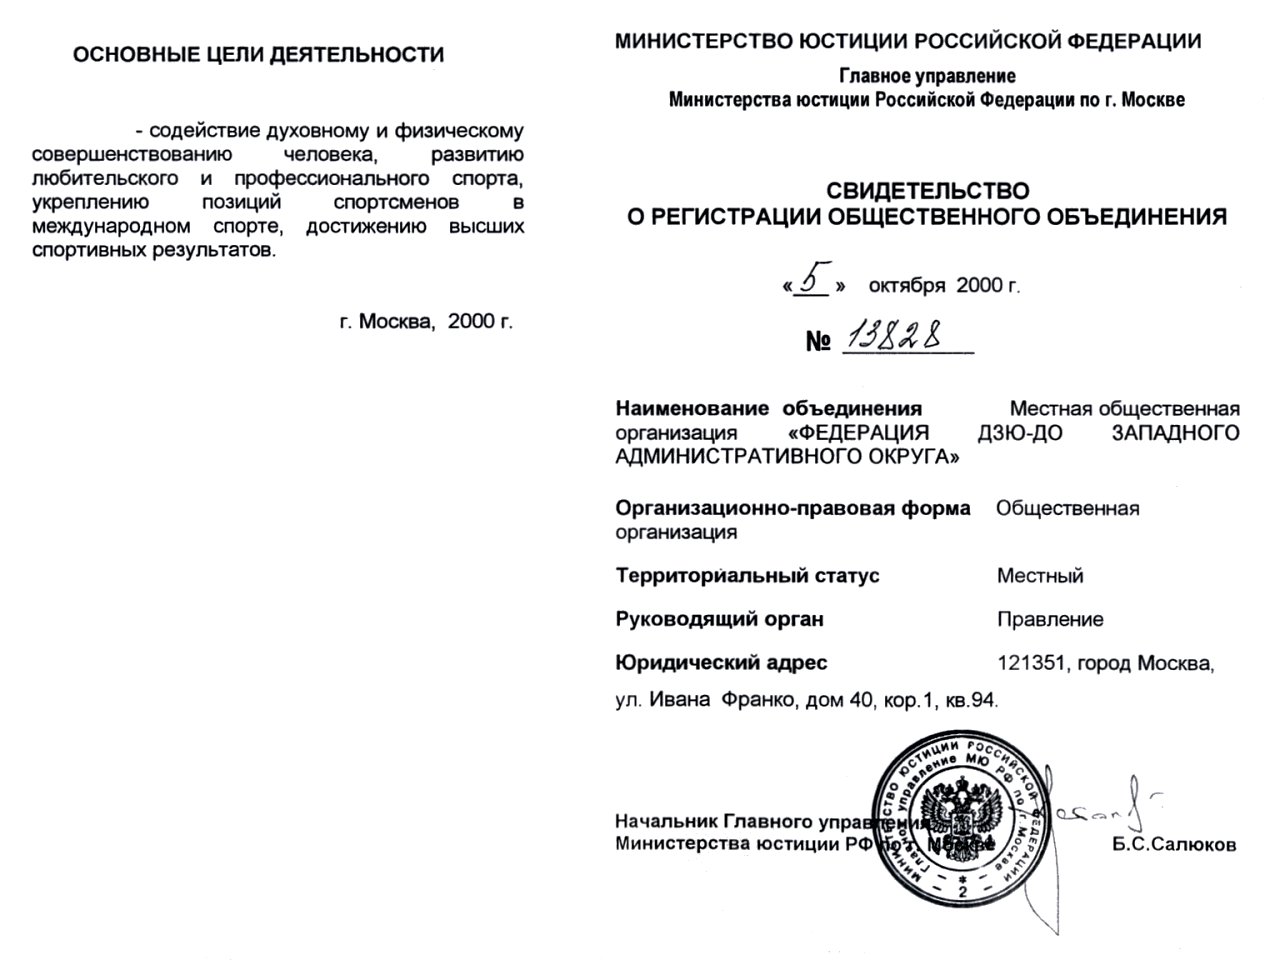 Сайт московские документы